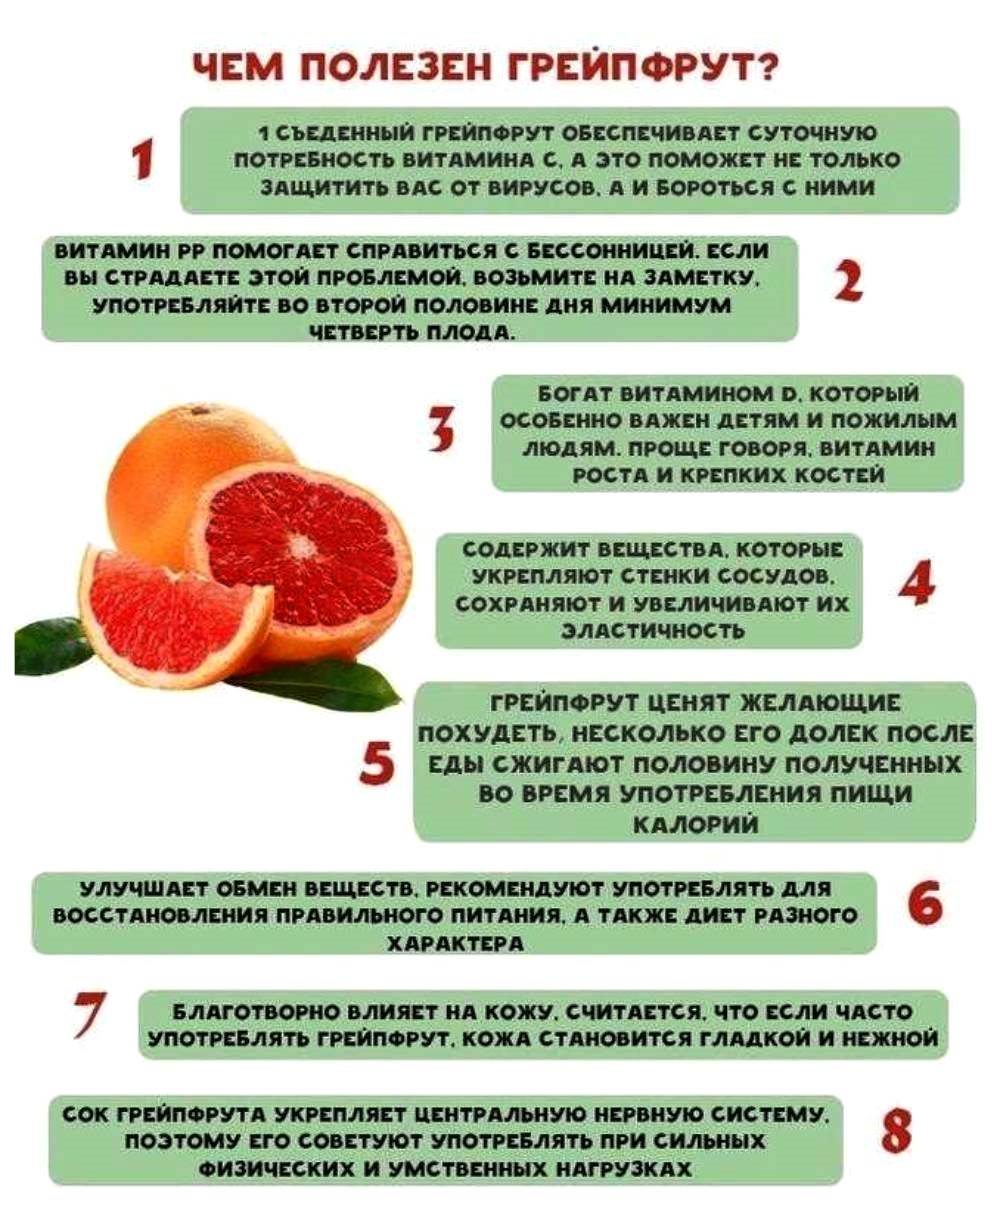 Сколько можно съедать апельсинов в день. Грейпфрут польза. Чем полезен грейпфрут. Чем полезен грейпфрут для организма. Чем полезен гранат для организма.